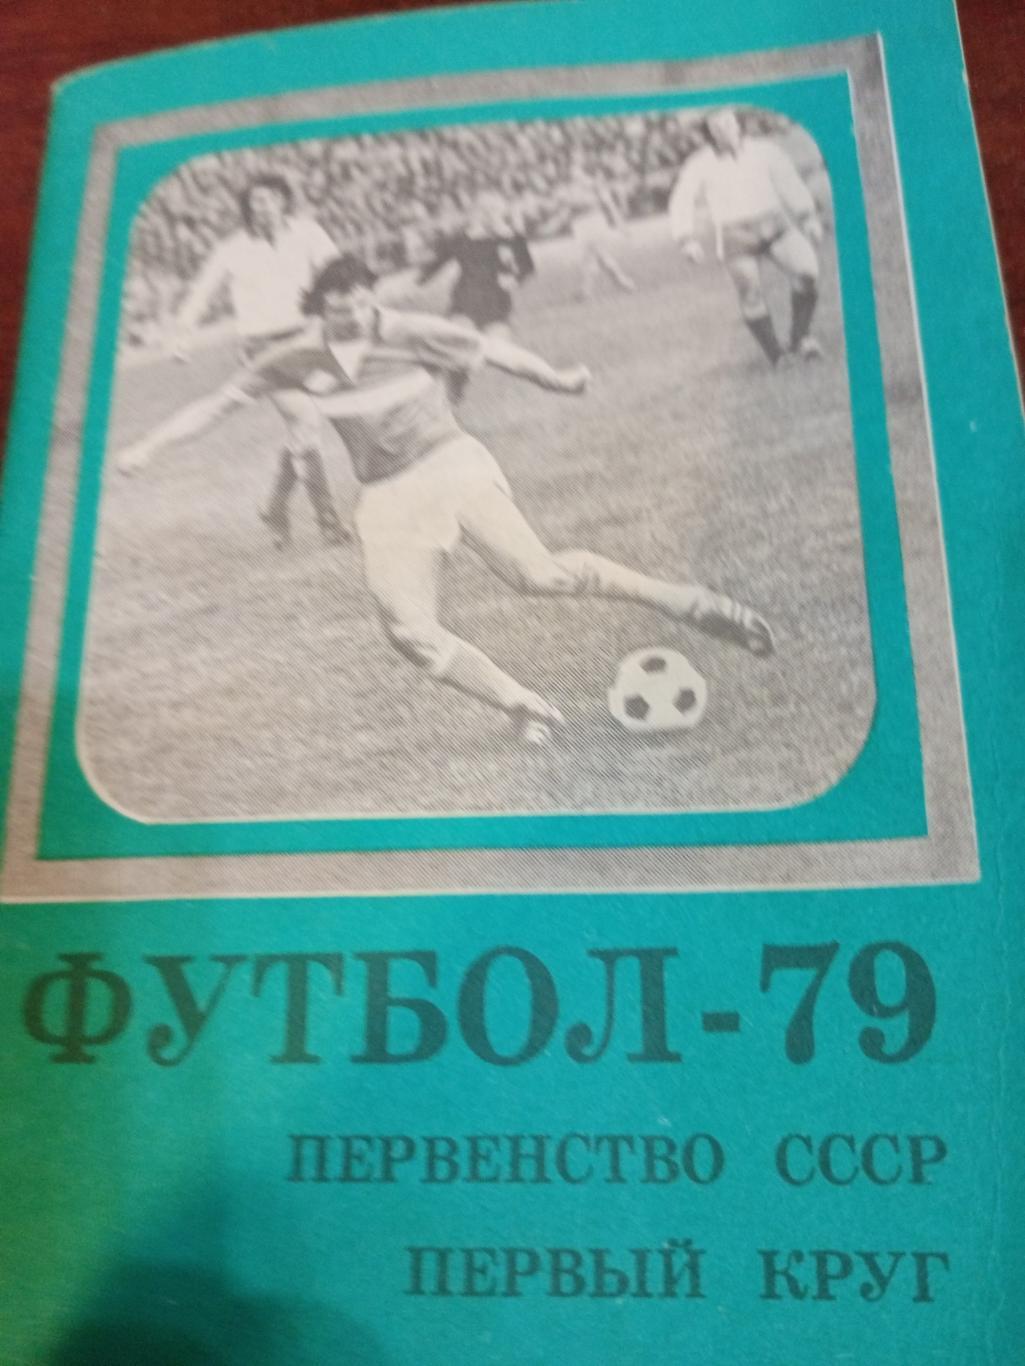 Футбол - 79, первый круг. Московская правда